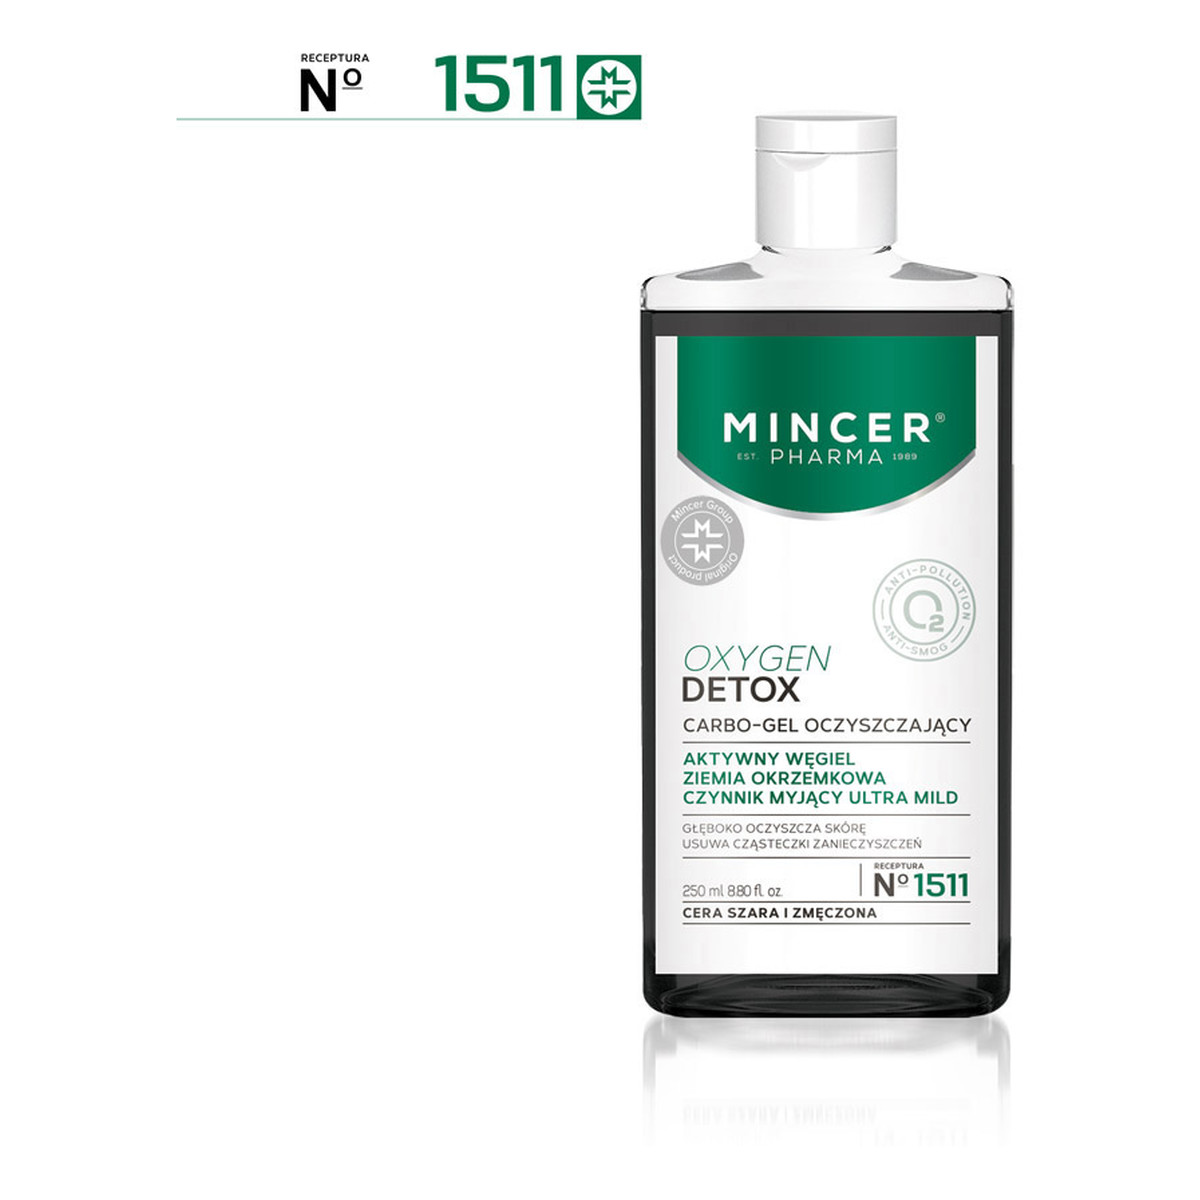 Mincer Pharma Oxygen Detox Carbo-gel oczyszczający No 1511 250ml